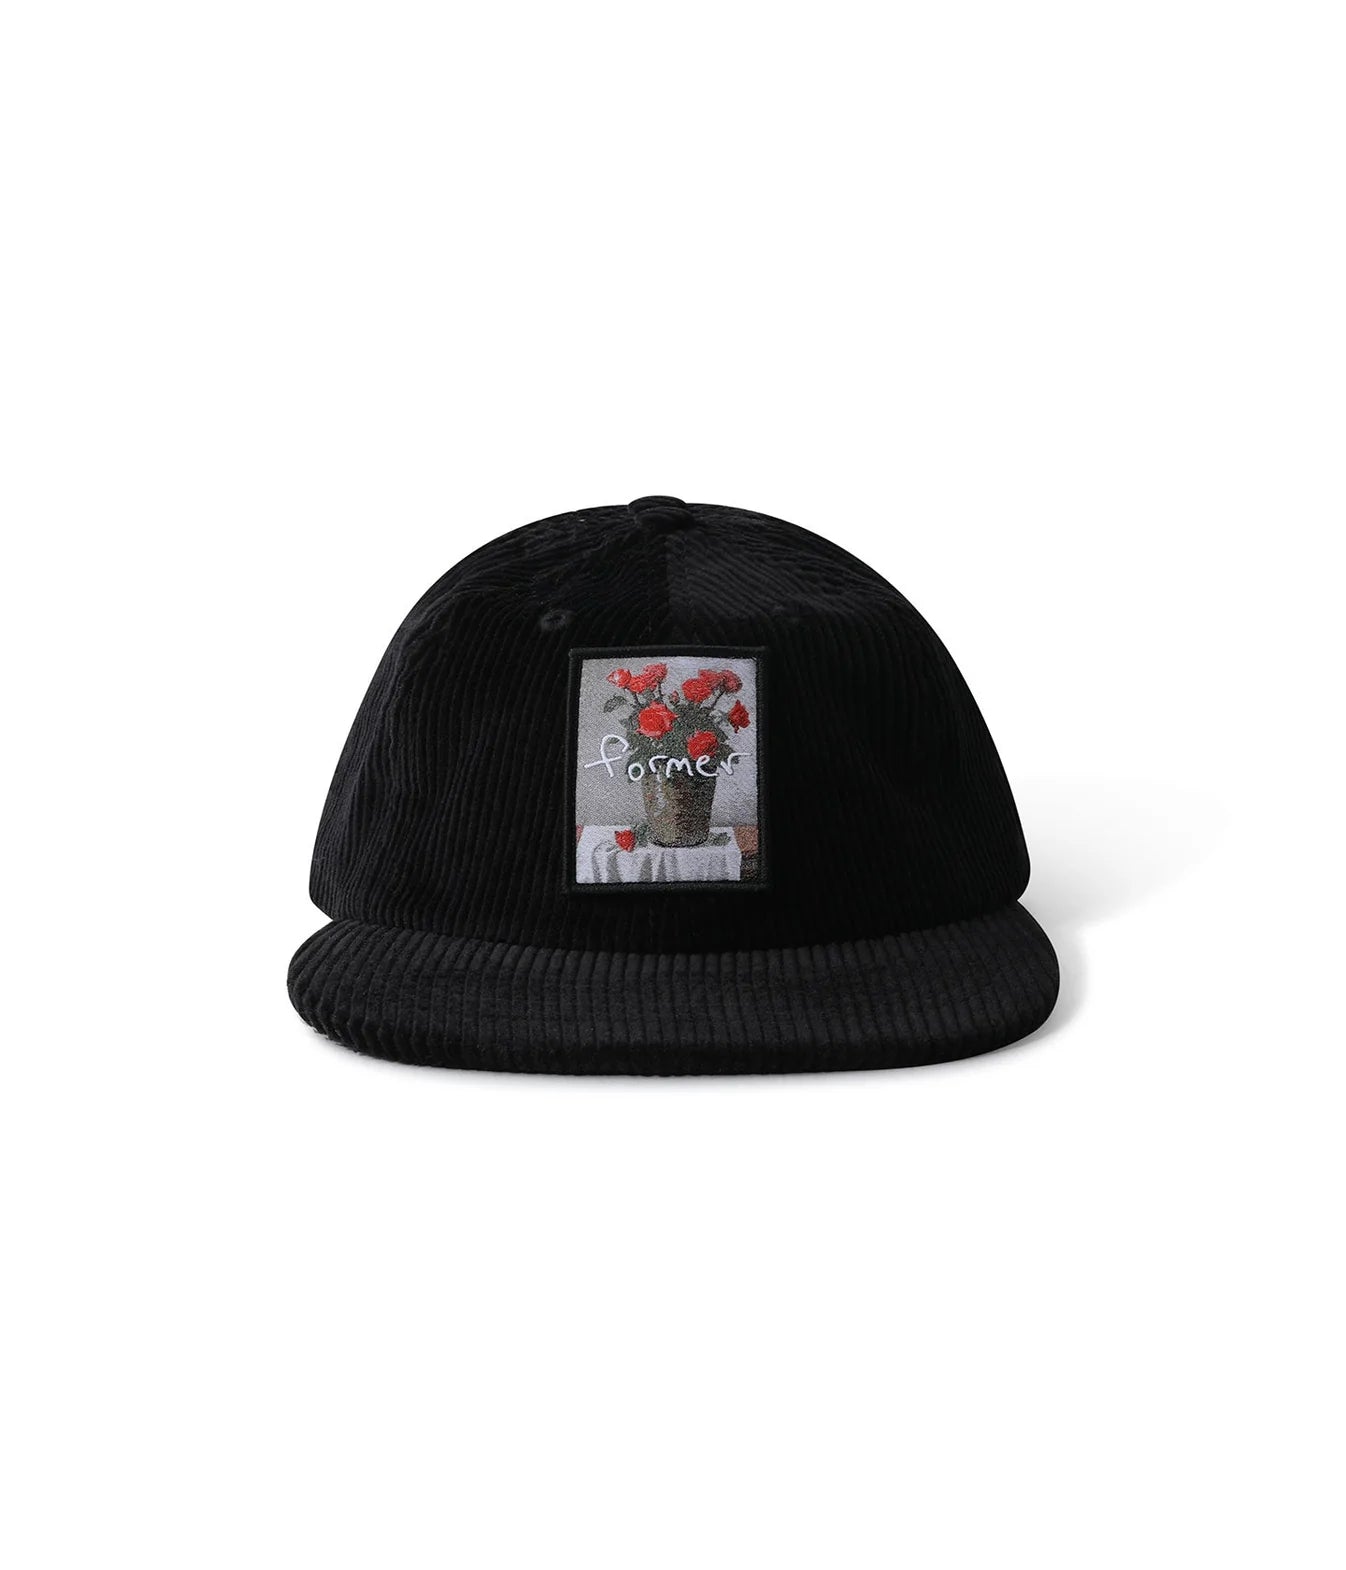 Former Still Life Cap Hat - Black